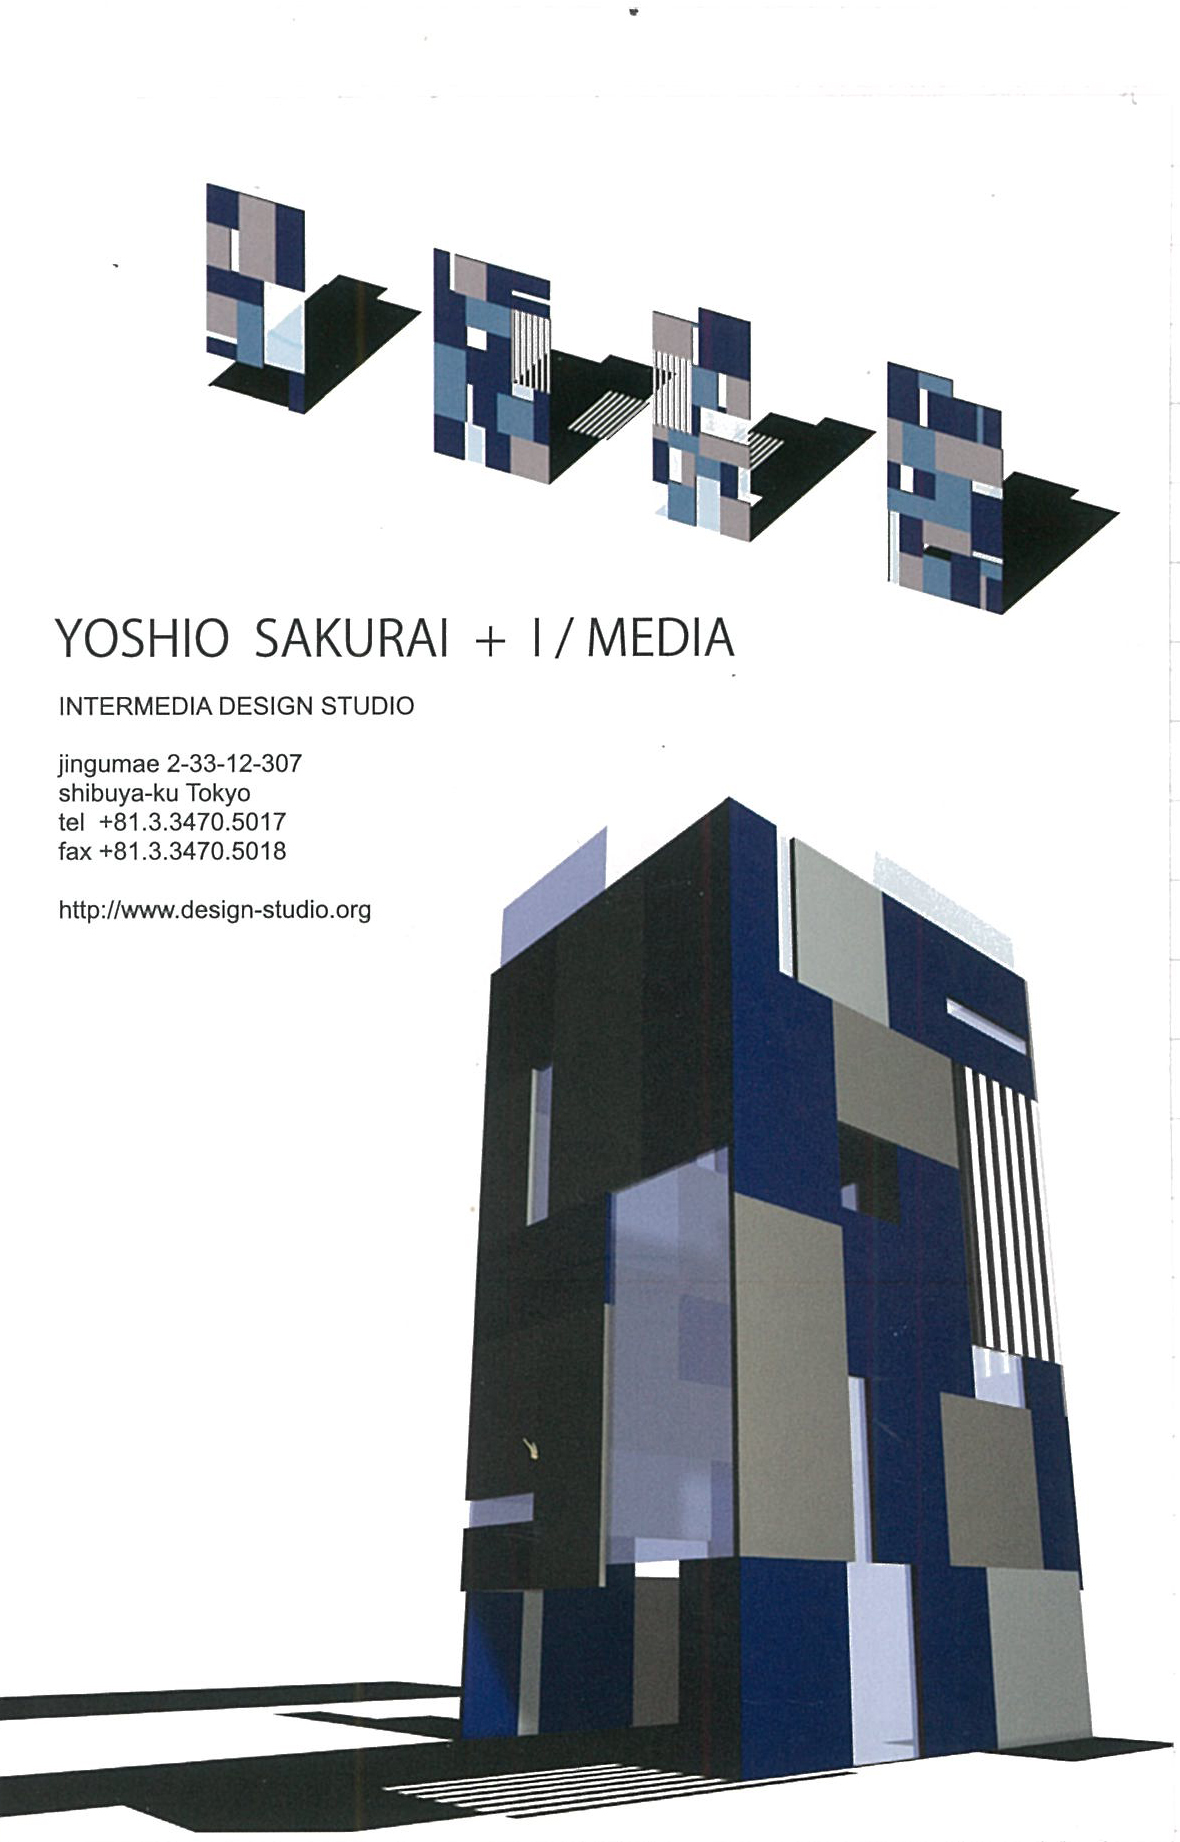 YOSHIO SAKURAI + I/MEDIA